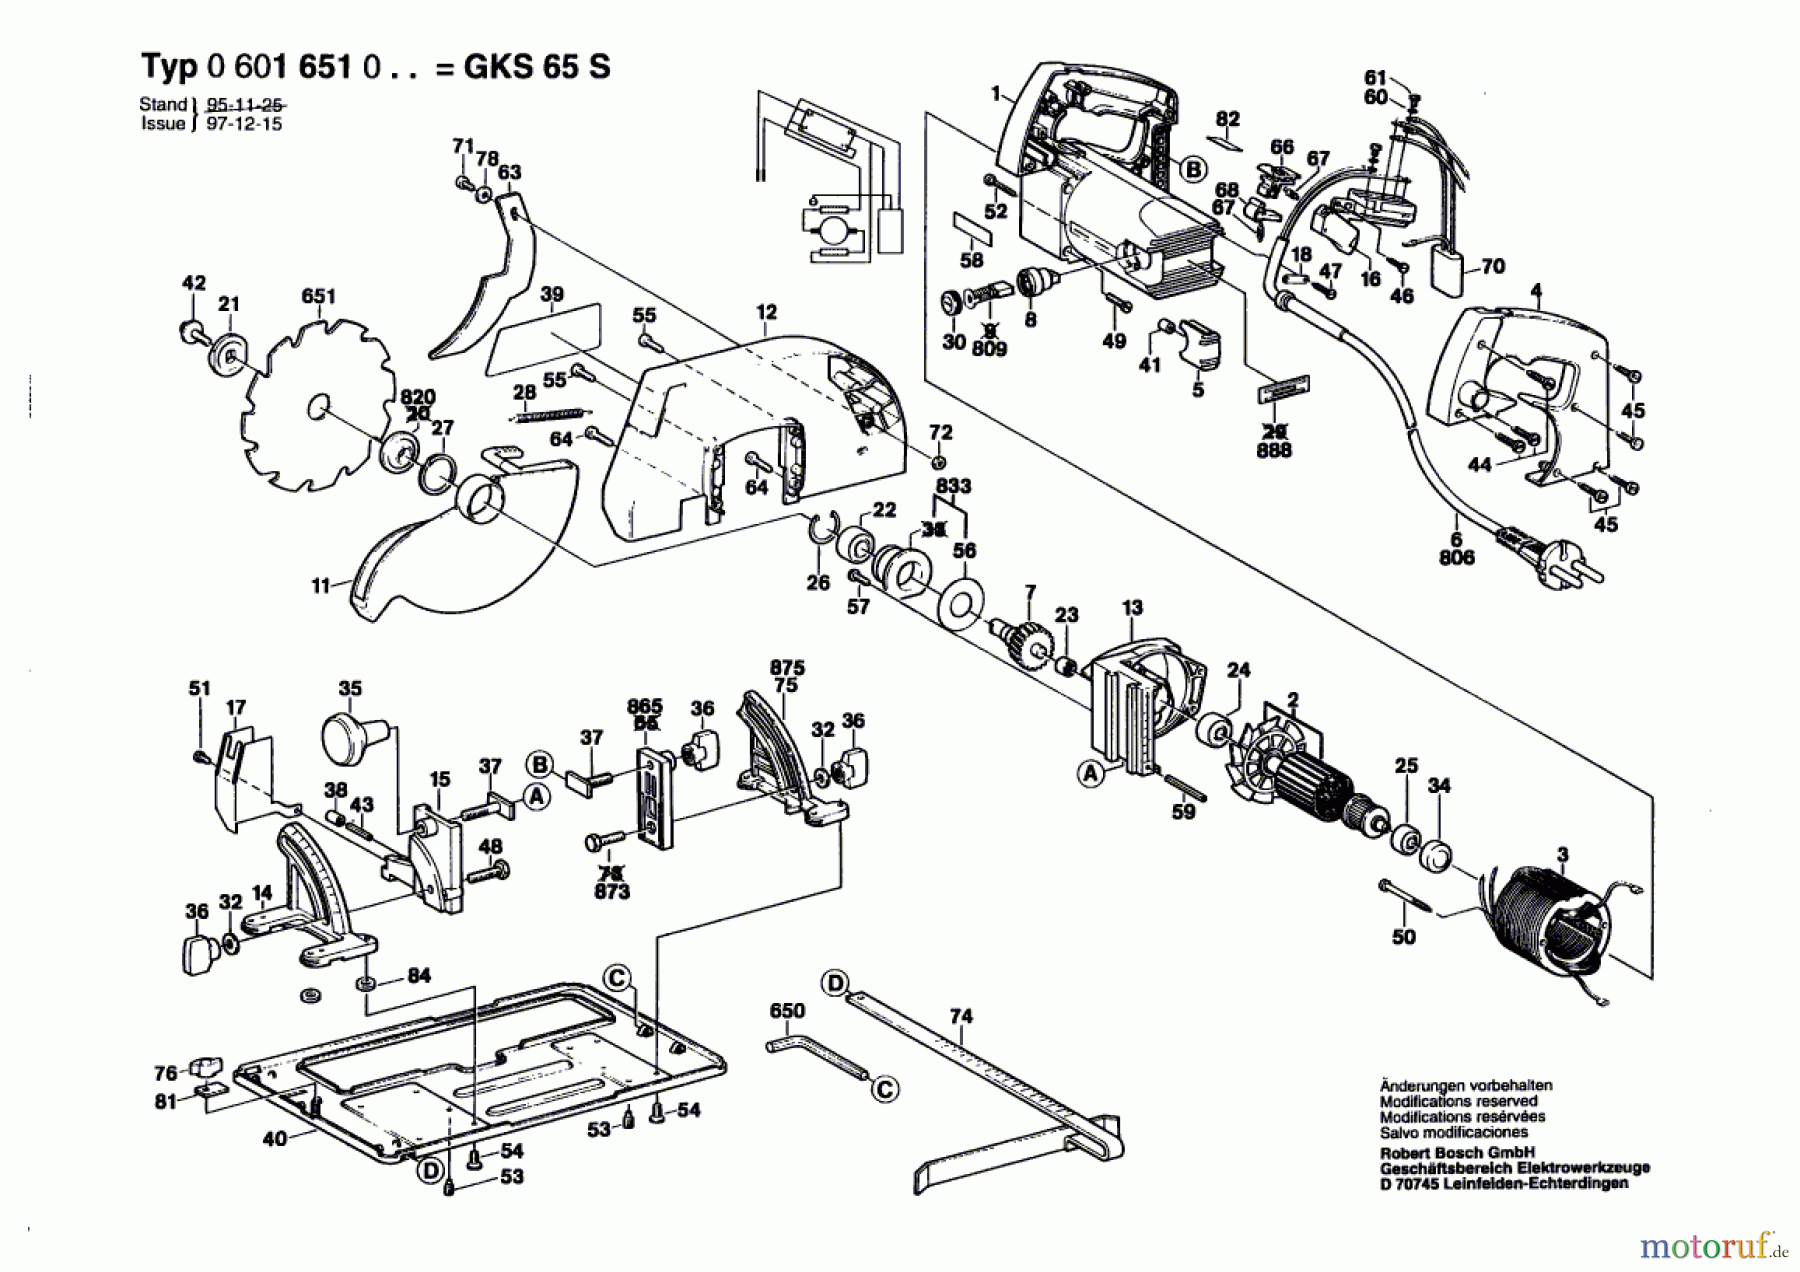  Bosch Werkzeug Handkreissäge GKS 65 S Seite 1